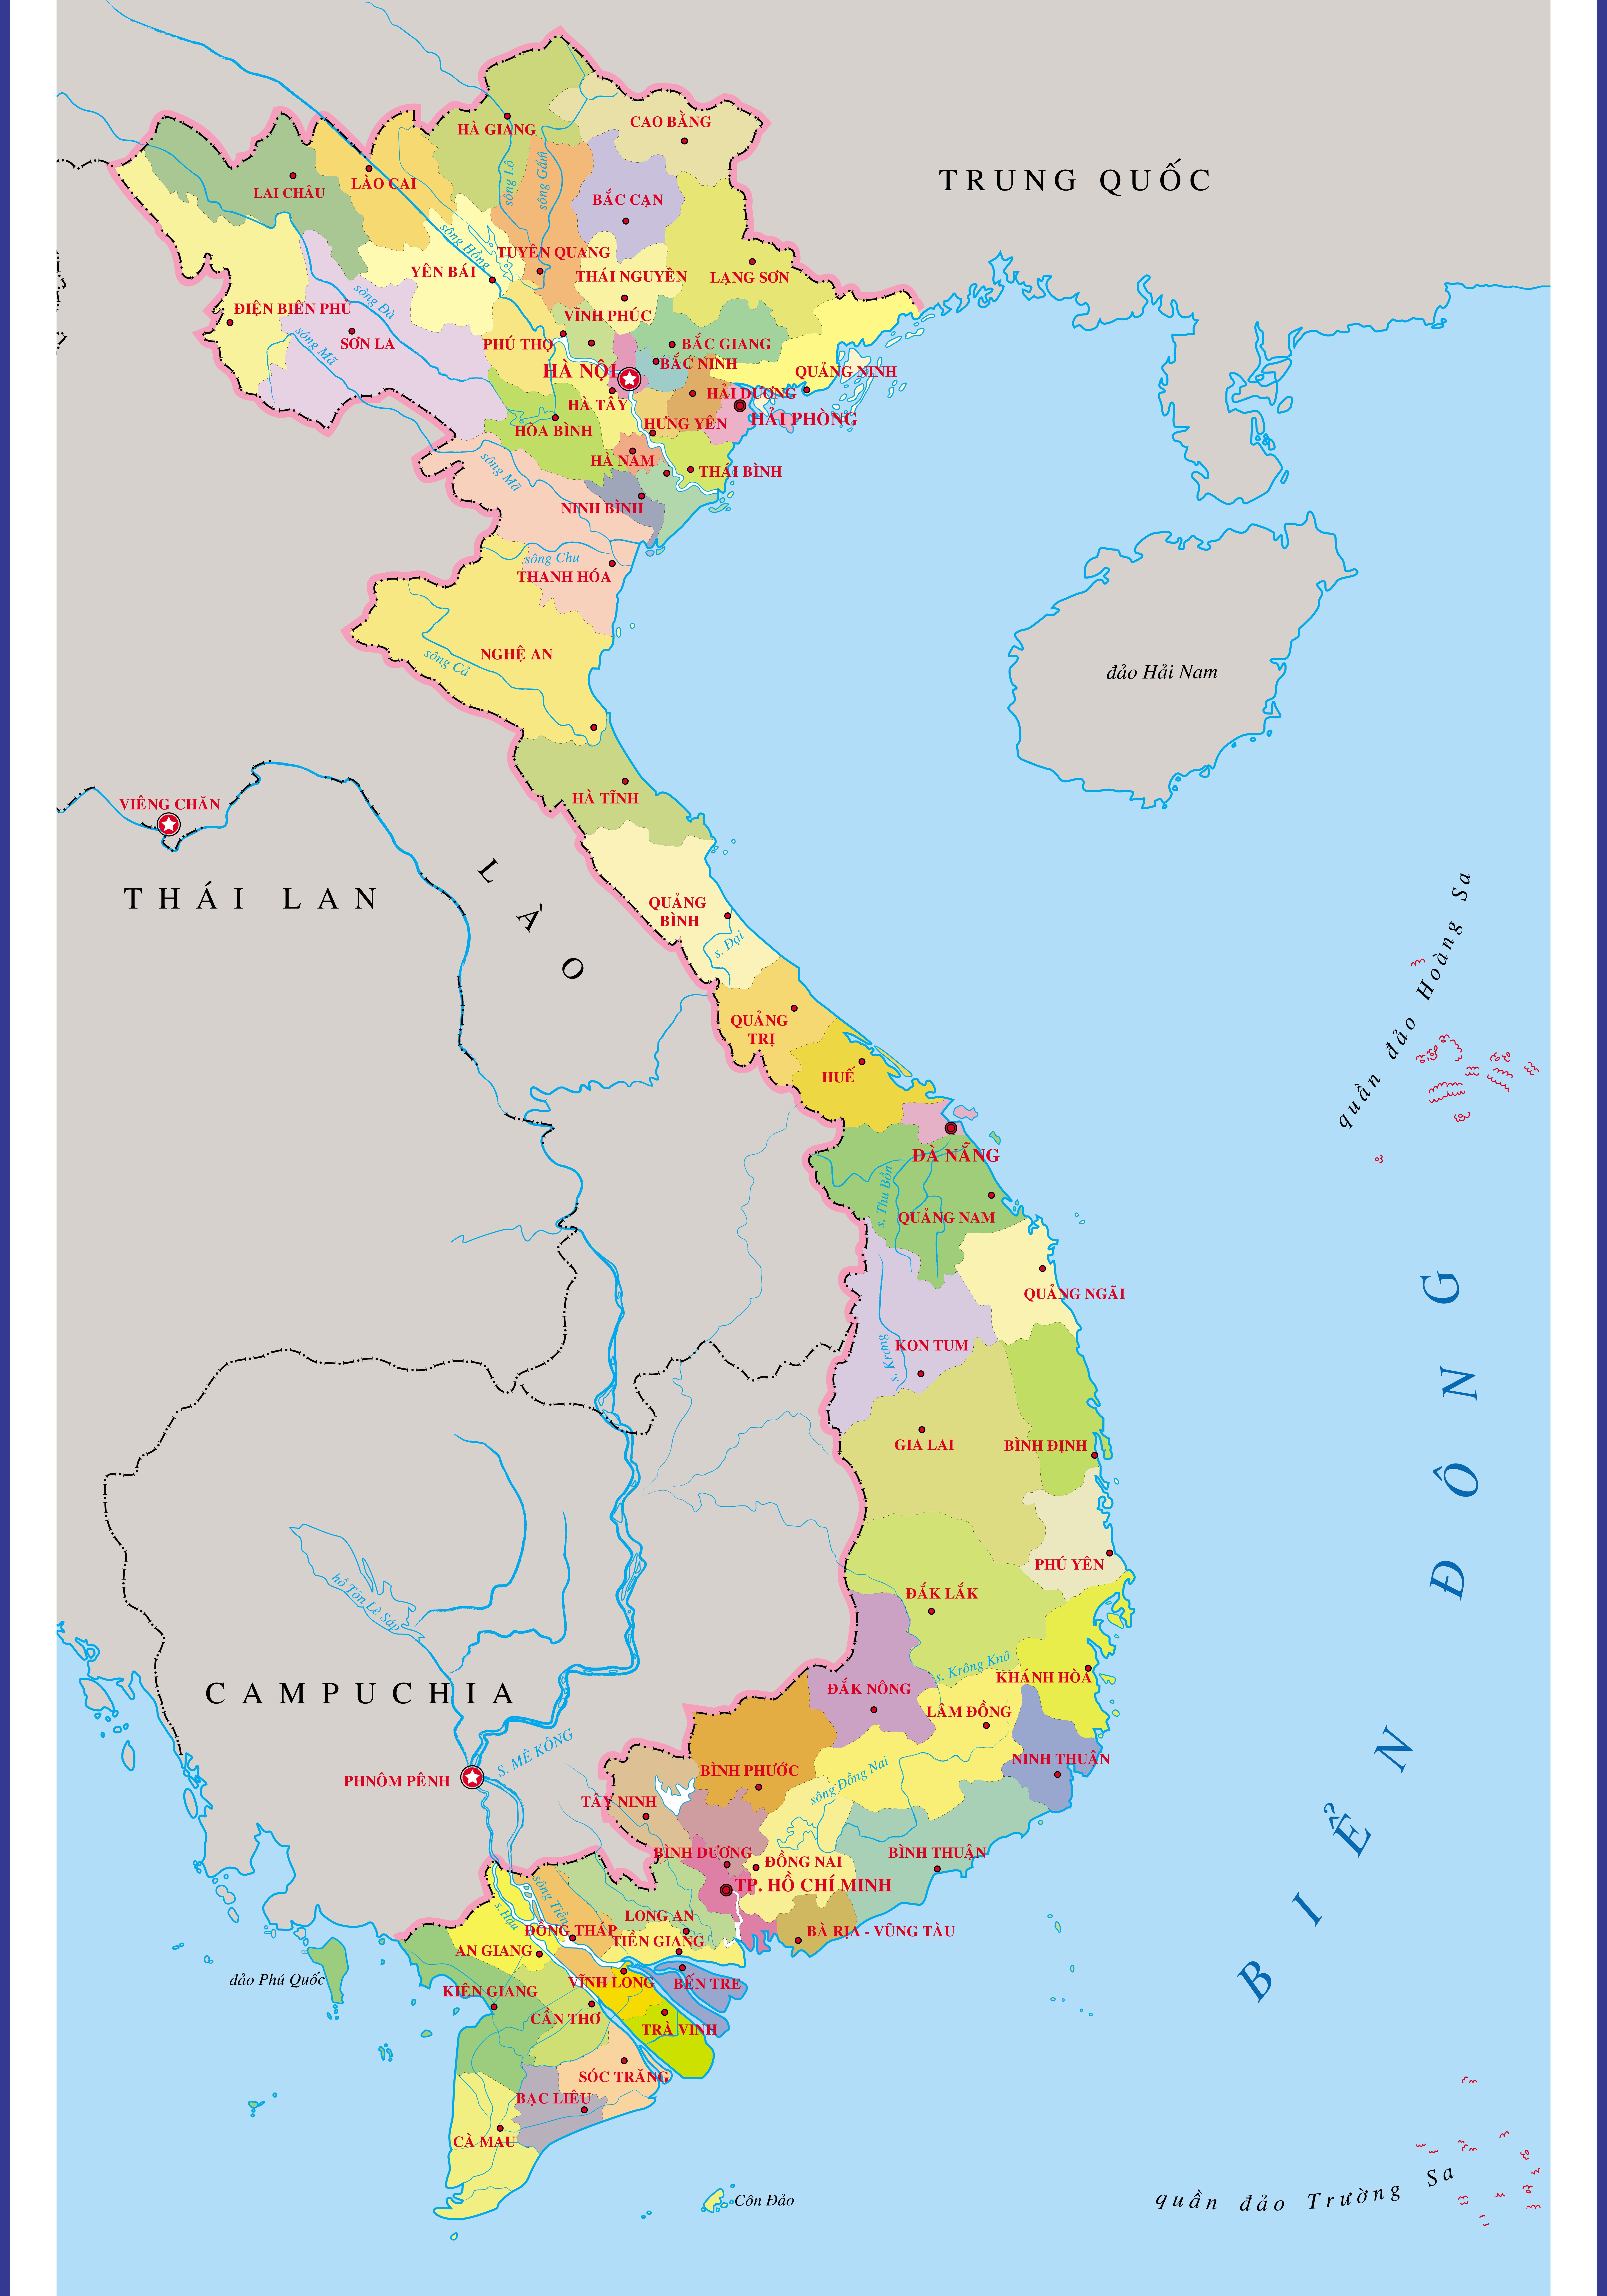 Việt Nam có bản đồ hành chính cực kỳ phong phú, thể hiện mọi chi tiết về địa lý và chính quyền của các tỉnh thành. Bản đồ này không chỉ giúp cho quá trình đi lại, truy xuất thông tin dễ dàng mà còn đem lại sự thu hút cho du khách. Bạn sẽ cảm thấy thích thú và áp dụng ngay thông tin từ bản đồ để cho chuyến du lịch của mình trở nên đầy đủ và thuận tiện hơn.